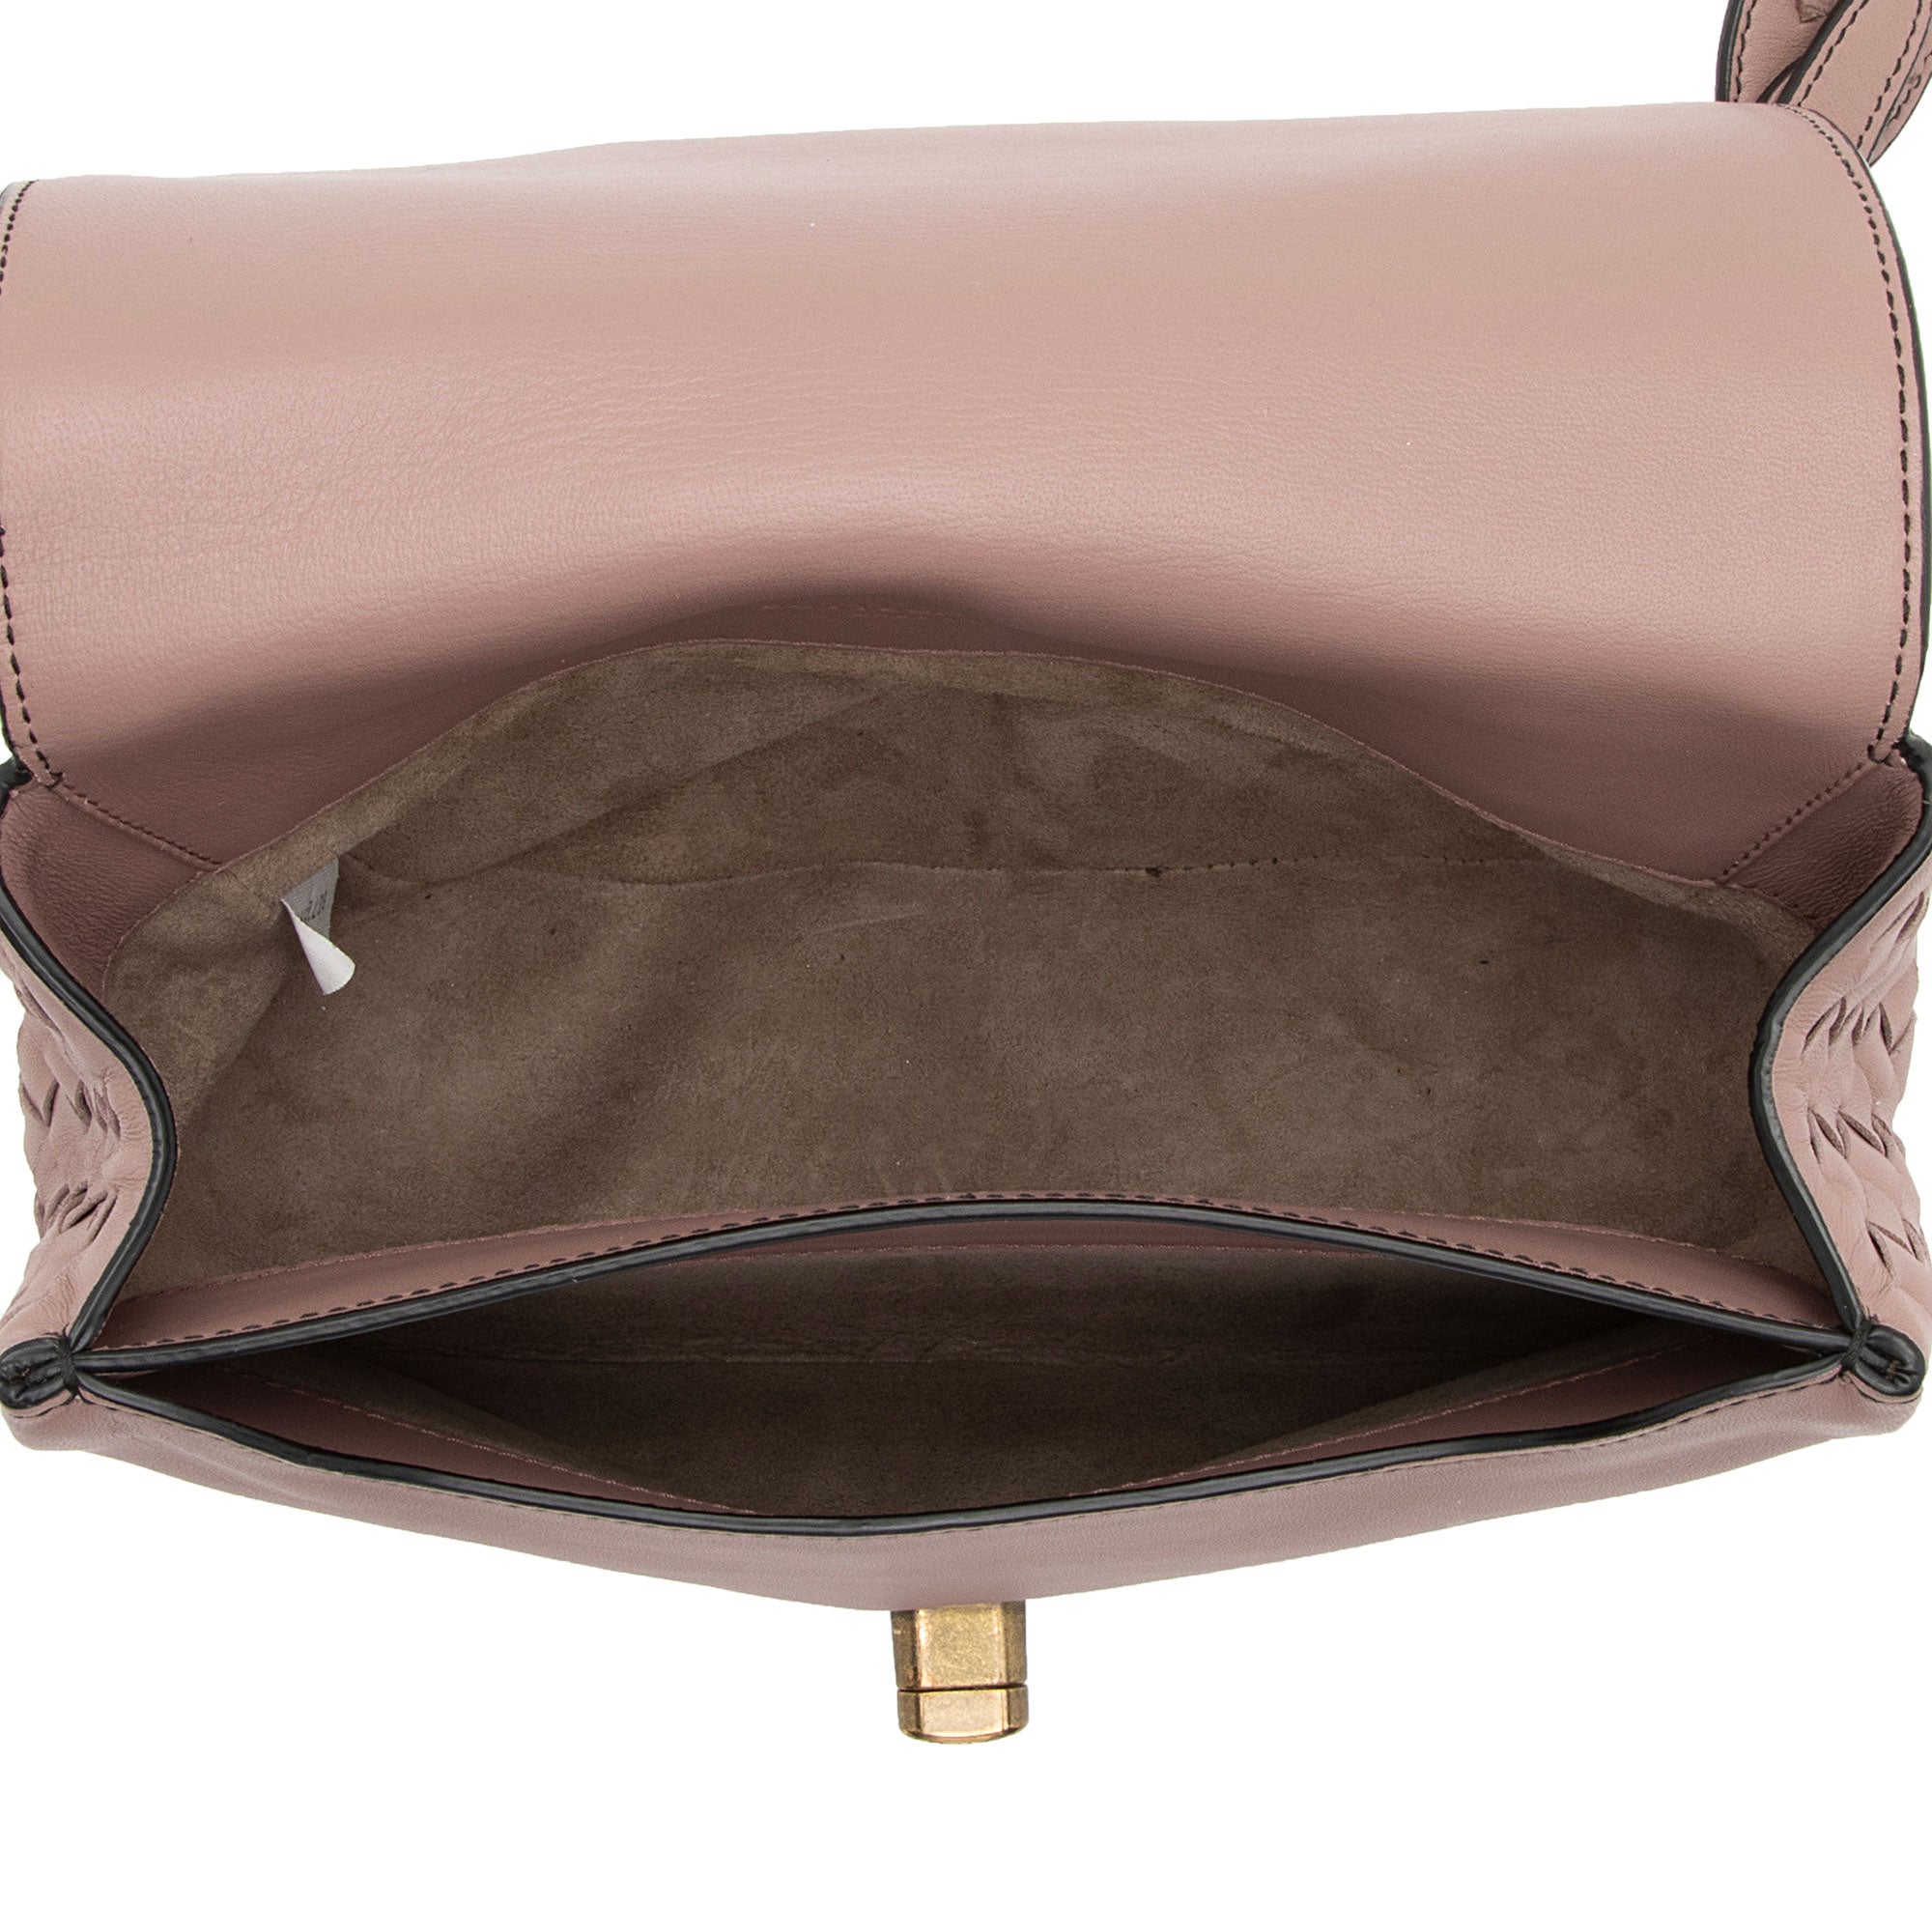 Bottega Veneta Intrecciato Nappa Leather BV Luna Crossbody Bag